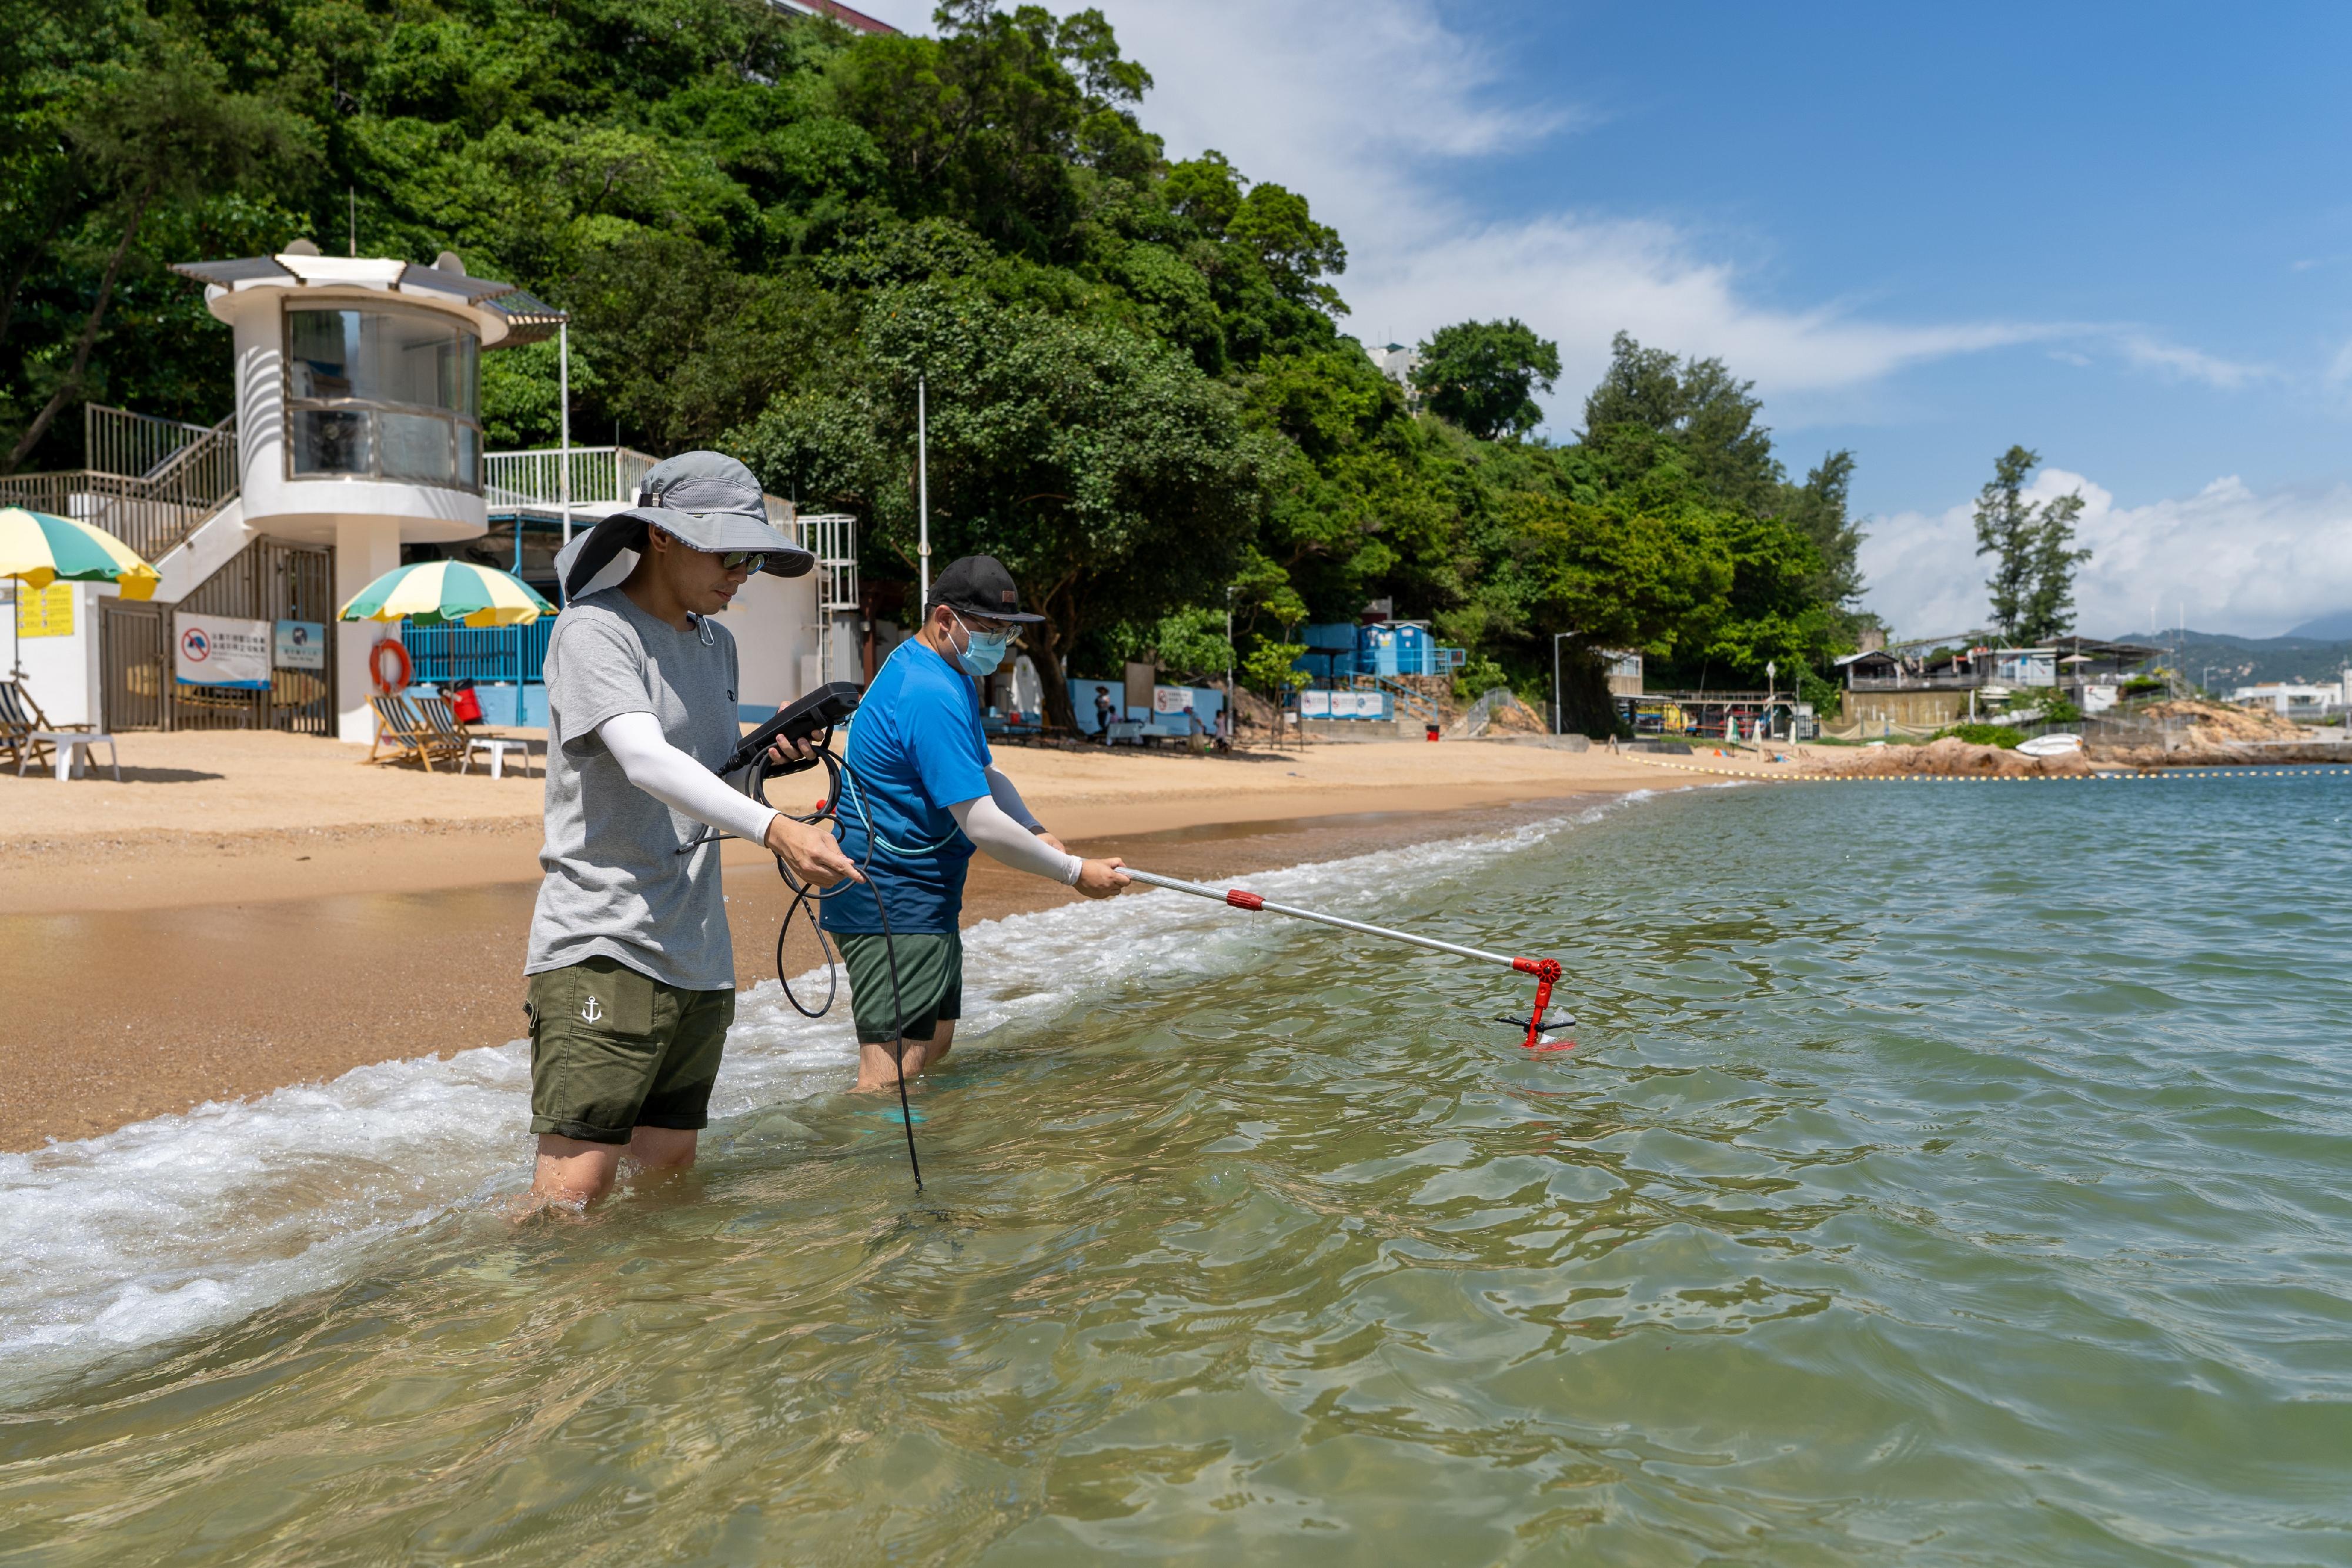 二○二三年香港泳滩水质年报显示，全港所有宪报公布泳滩已连续14年全面符合细菌水质指标。图示环境保护署人员在泳滩进行现场测量及采集海水样本。